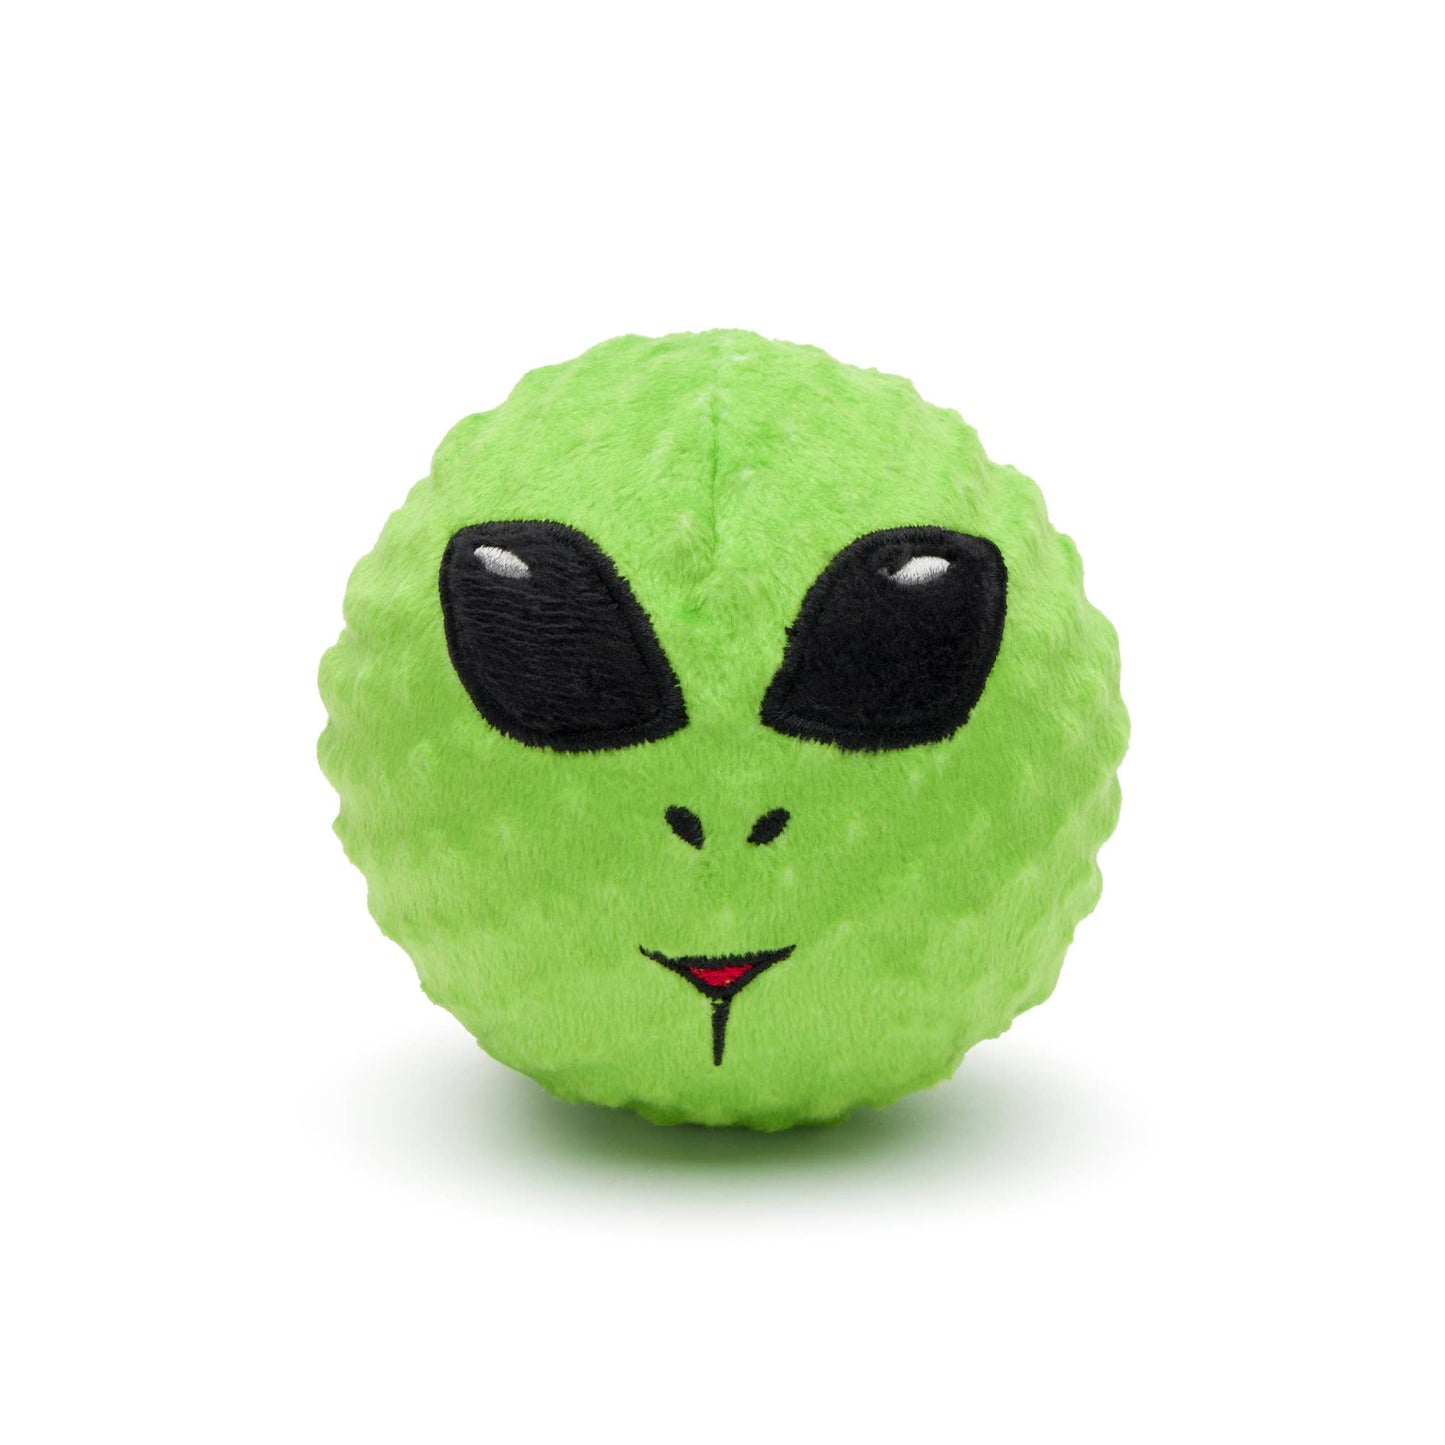 fabdog - Alien faball Dog Toy: Large  Image